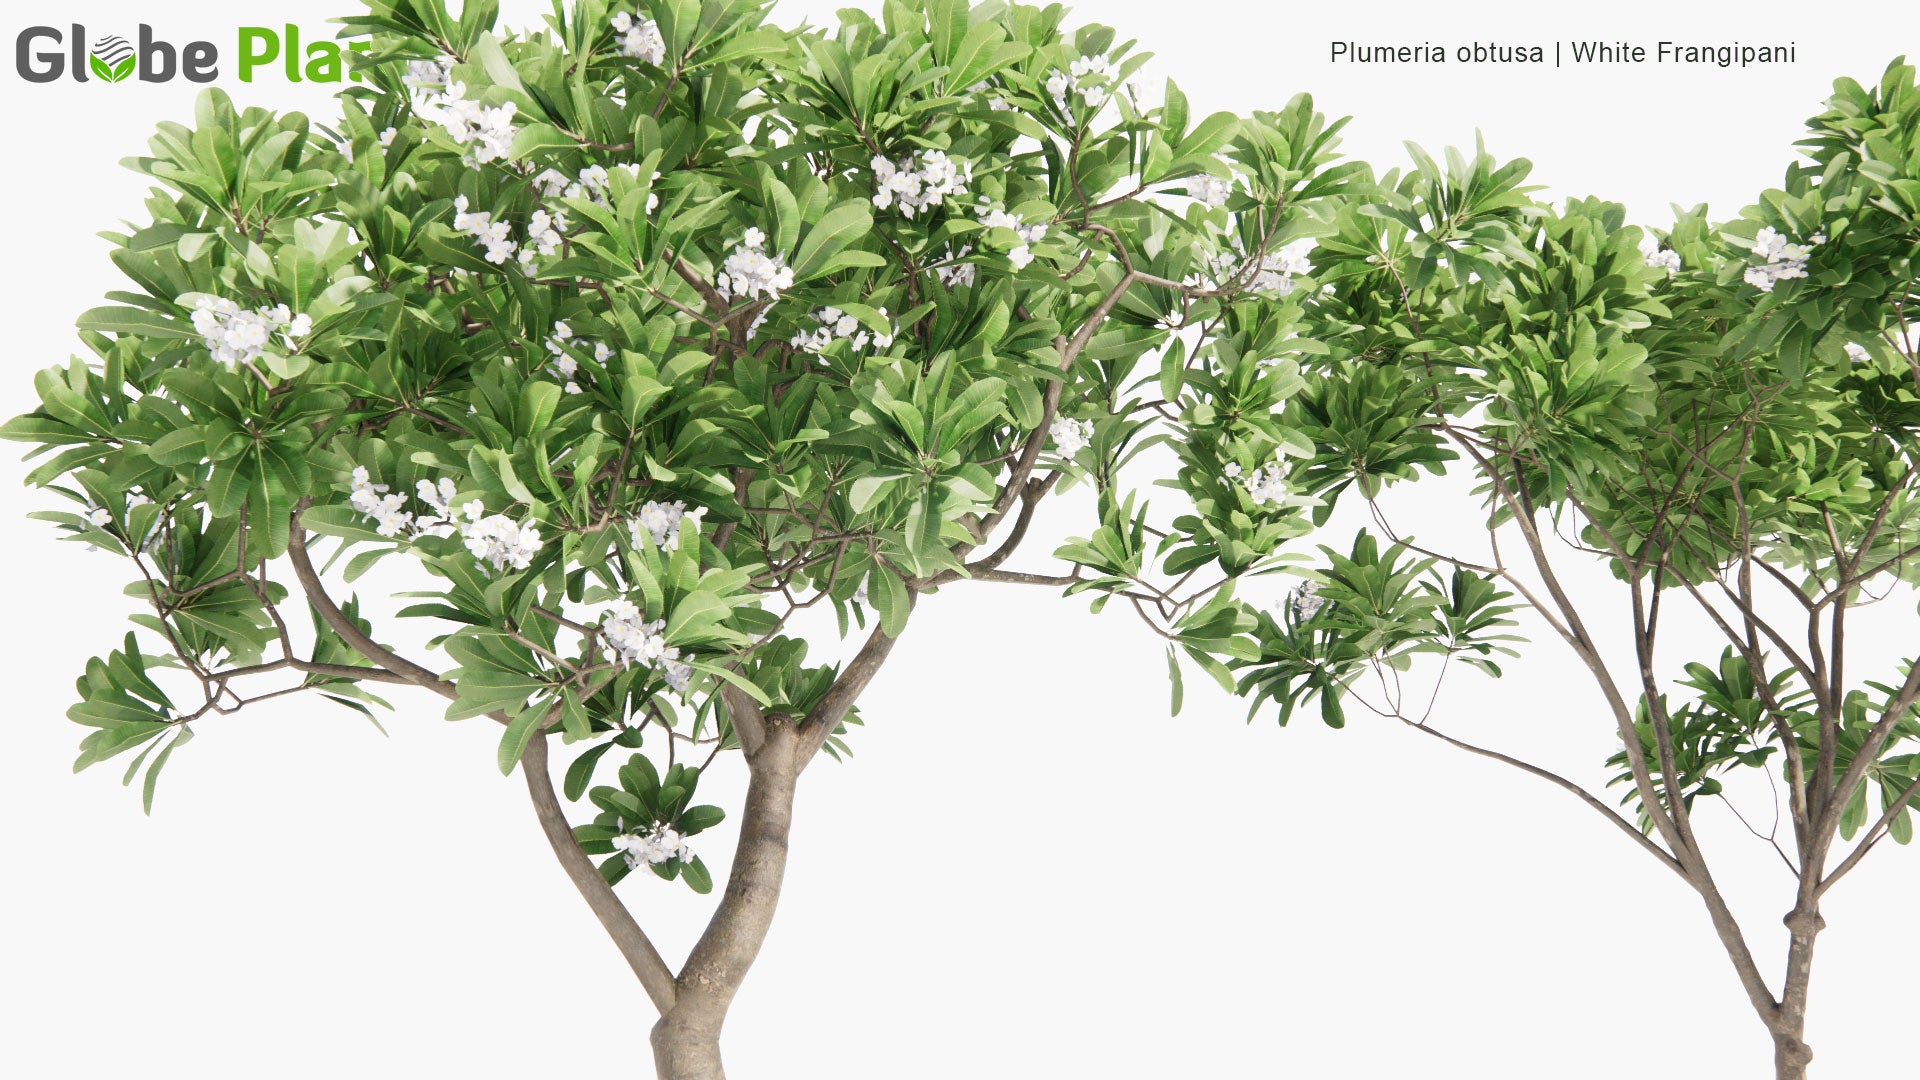 Low Poly Plumeria Obtusa - White Frangipani (3D Model)